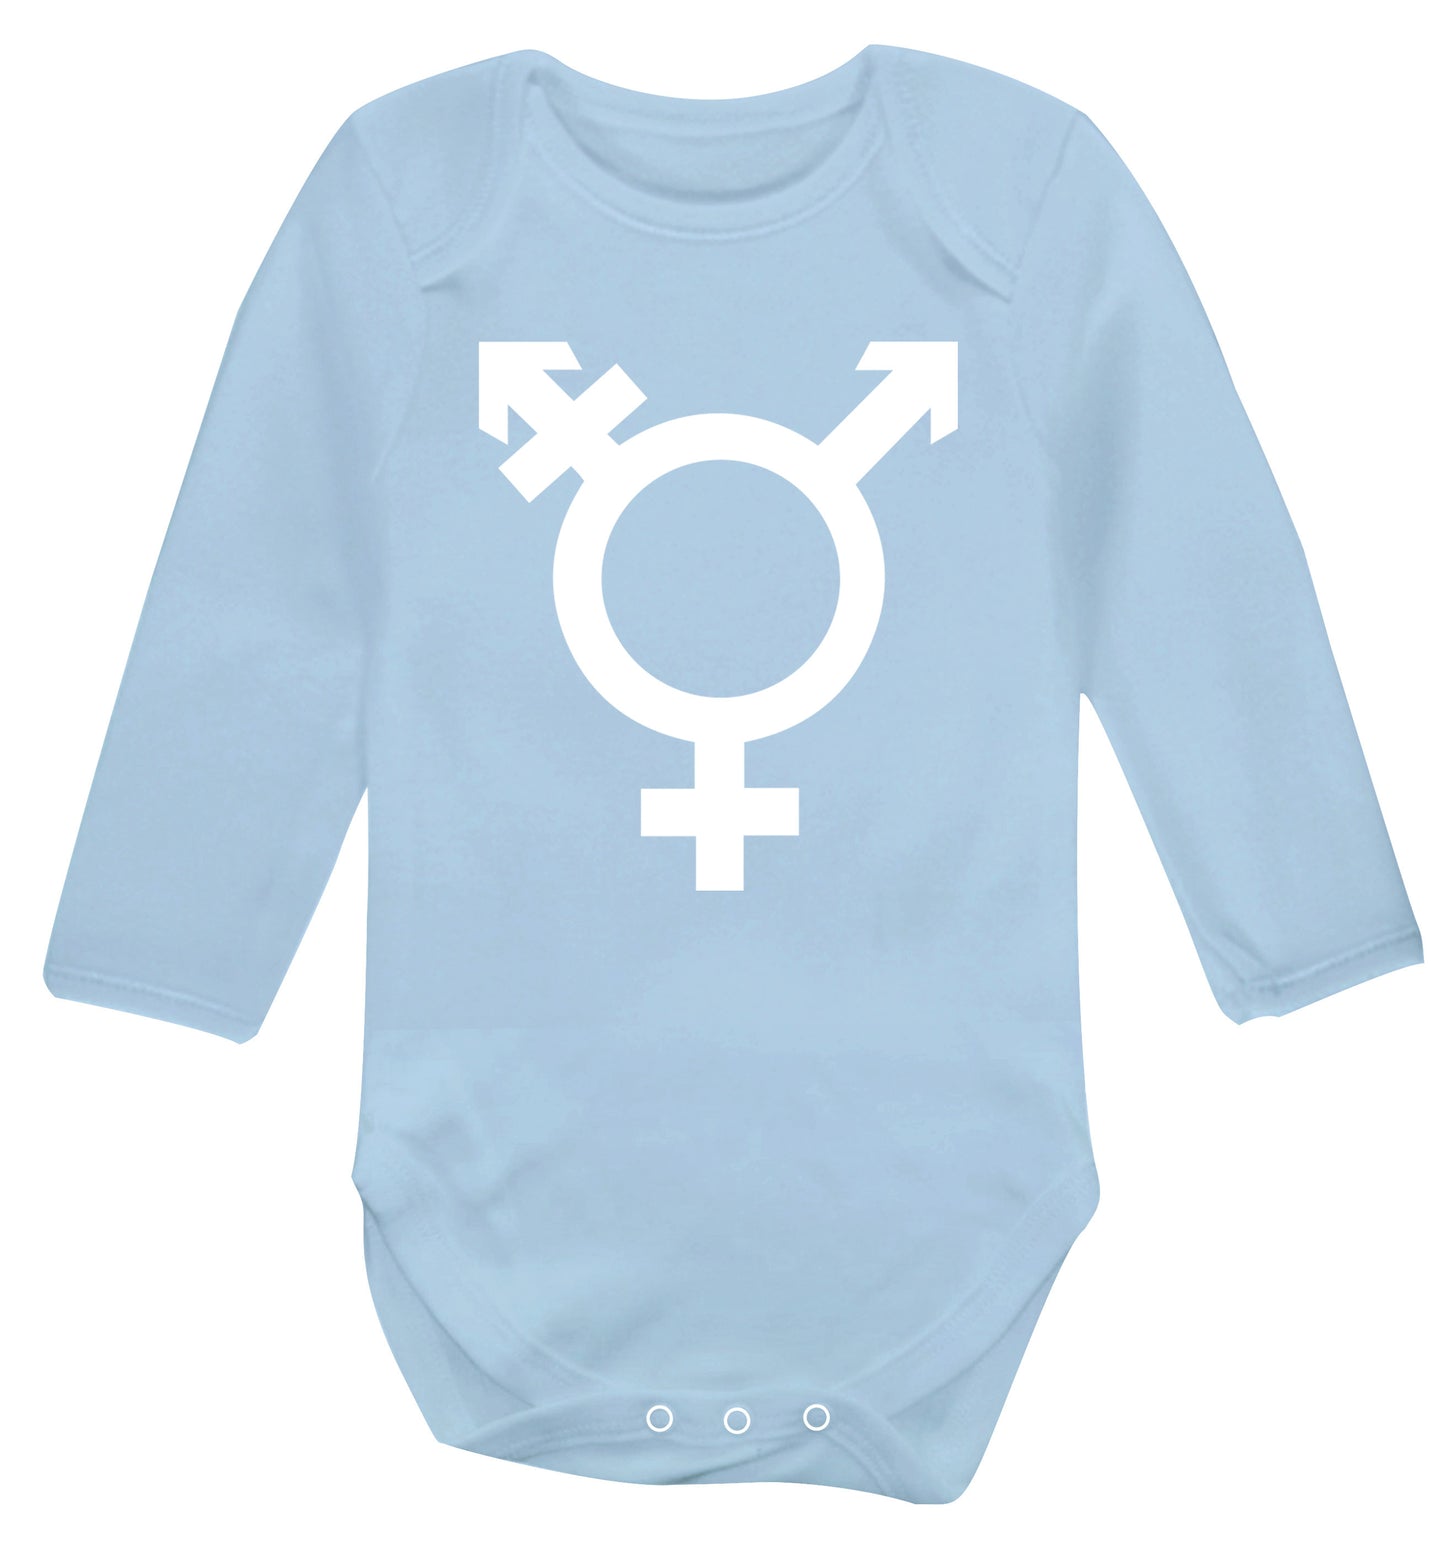 Gender neutral symbol large Baby Vest long sleeved pale blue 6-12 months